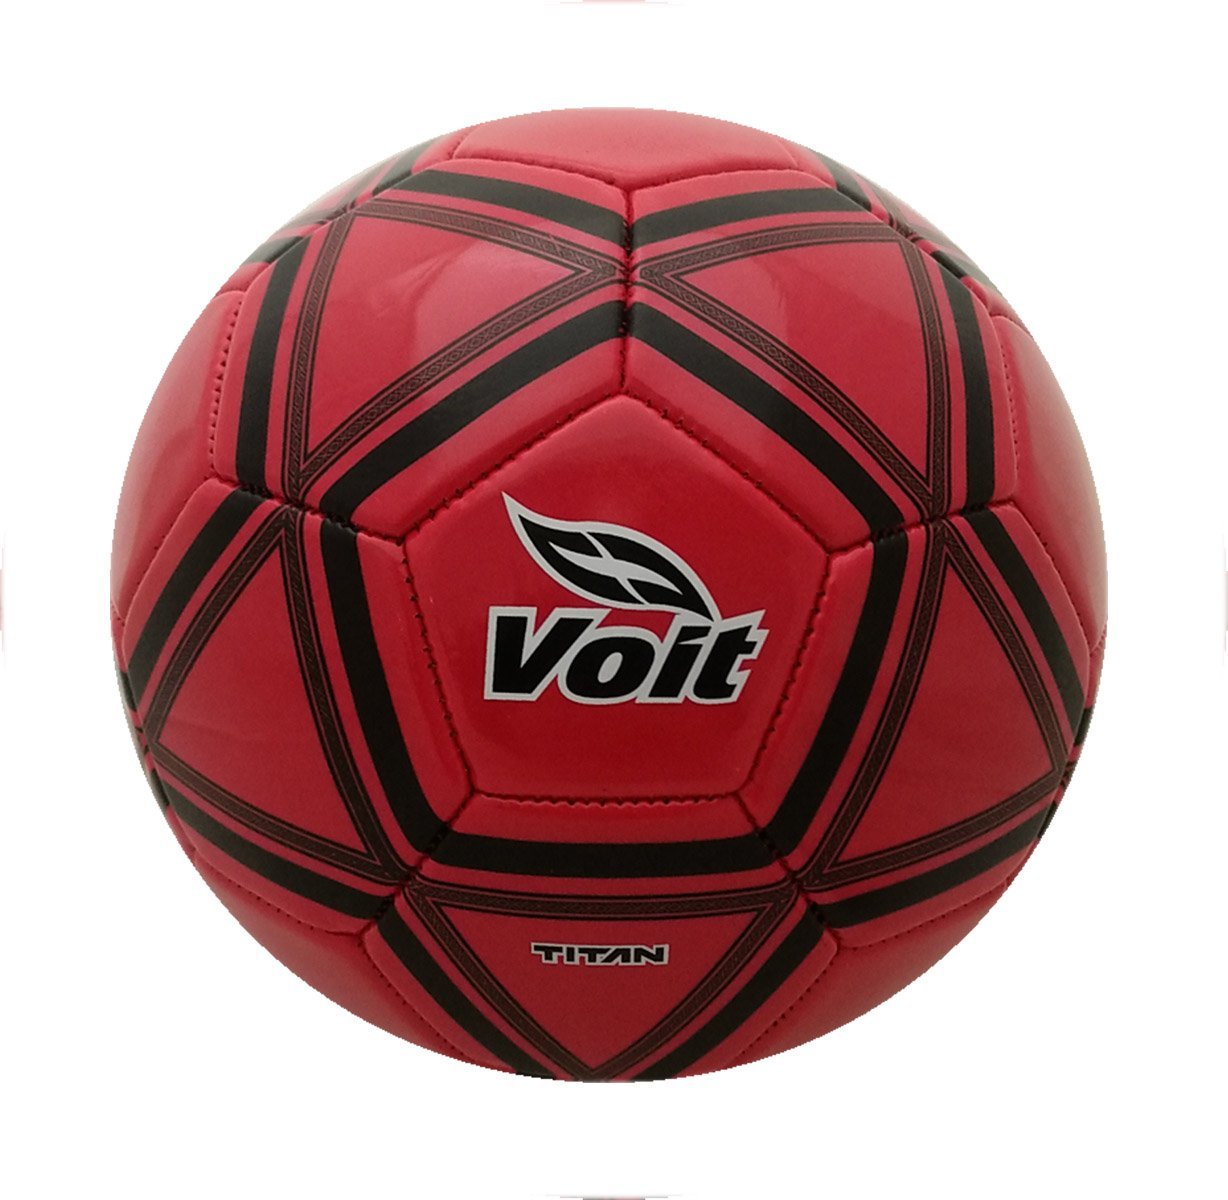 Balón Soccer No.3 Titan Rojo Voit